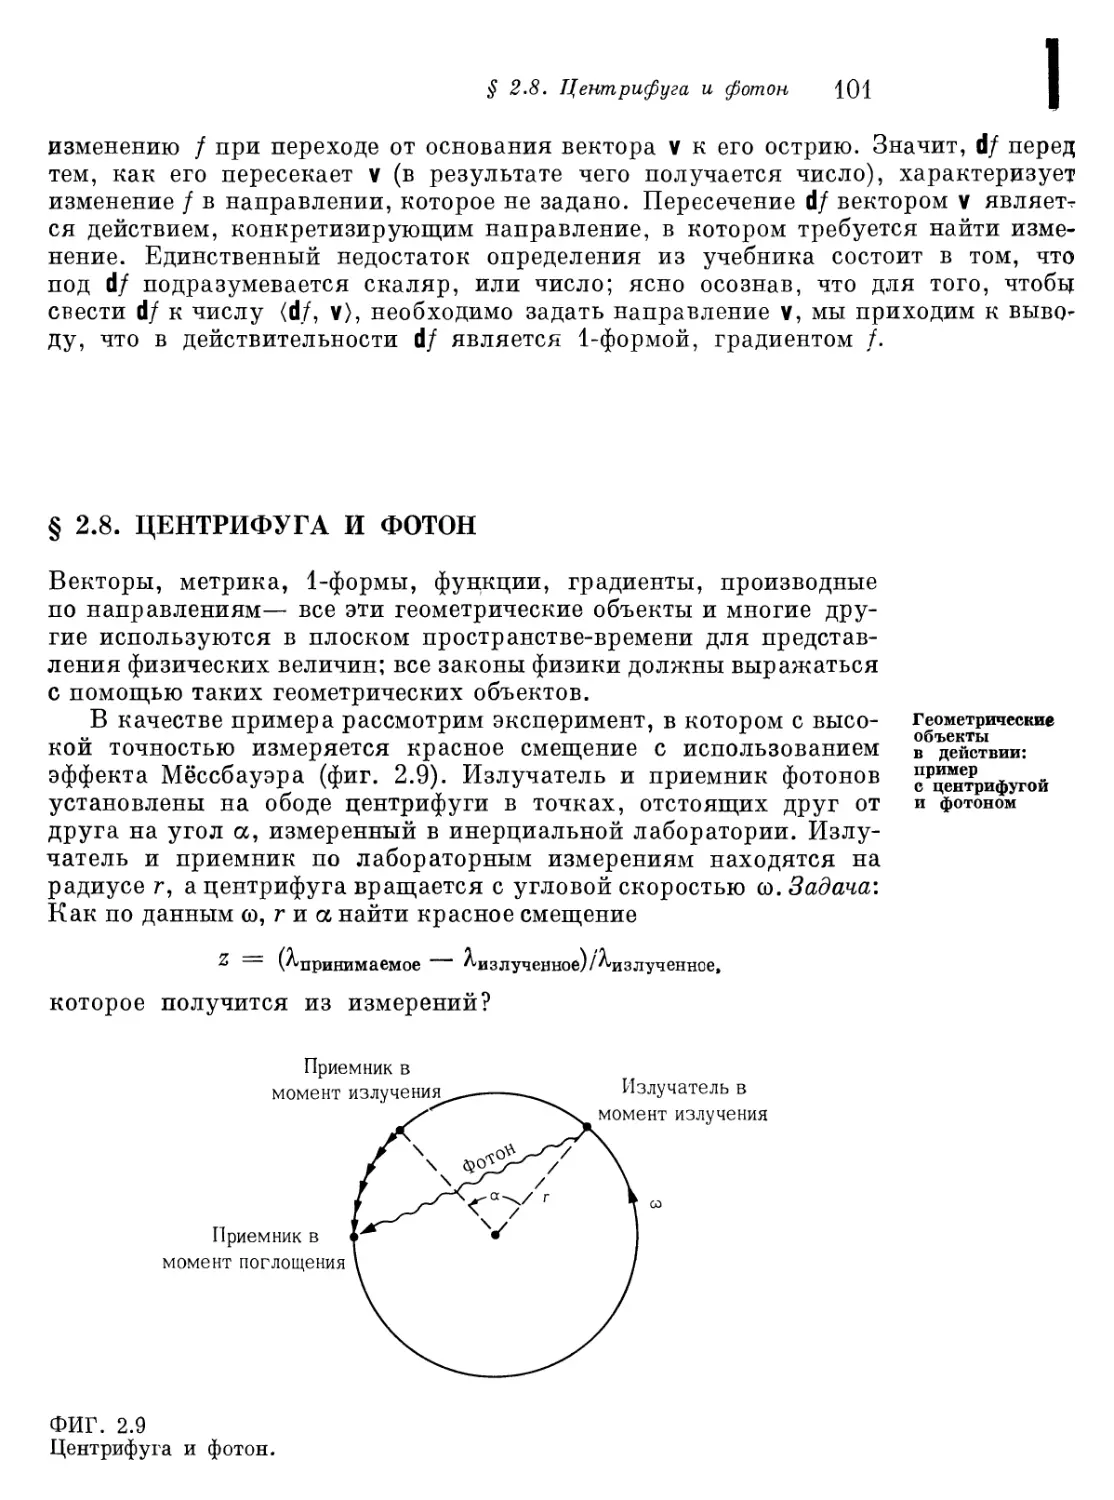 § 2.8. Центрифуга и фотон